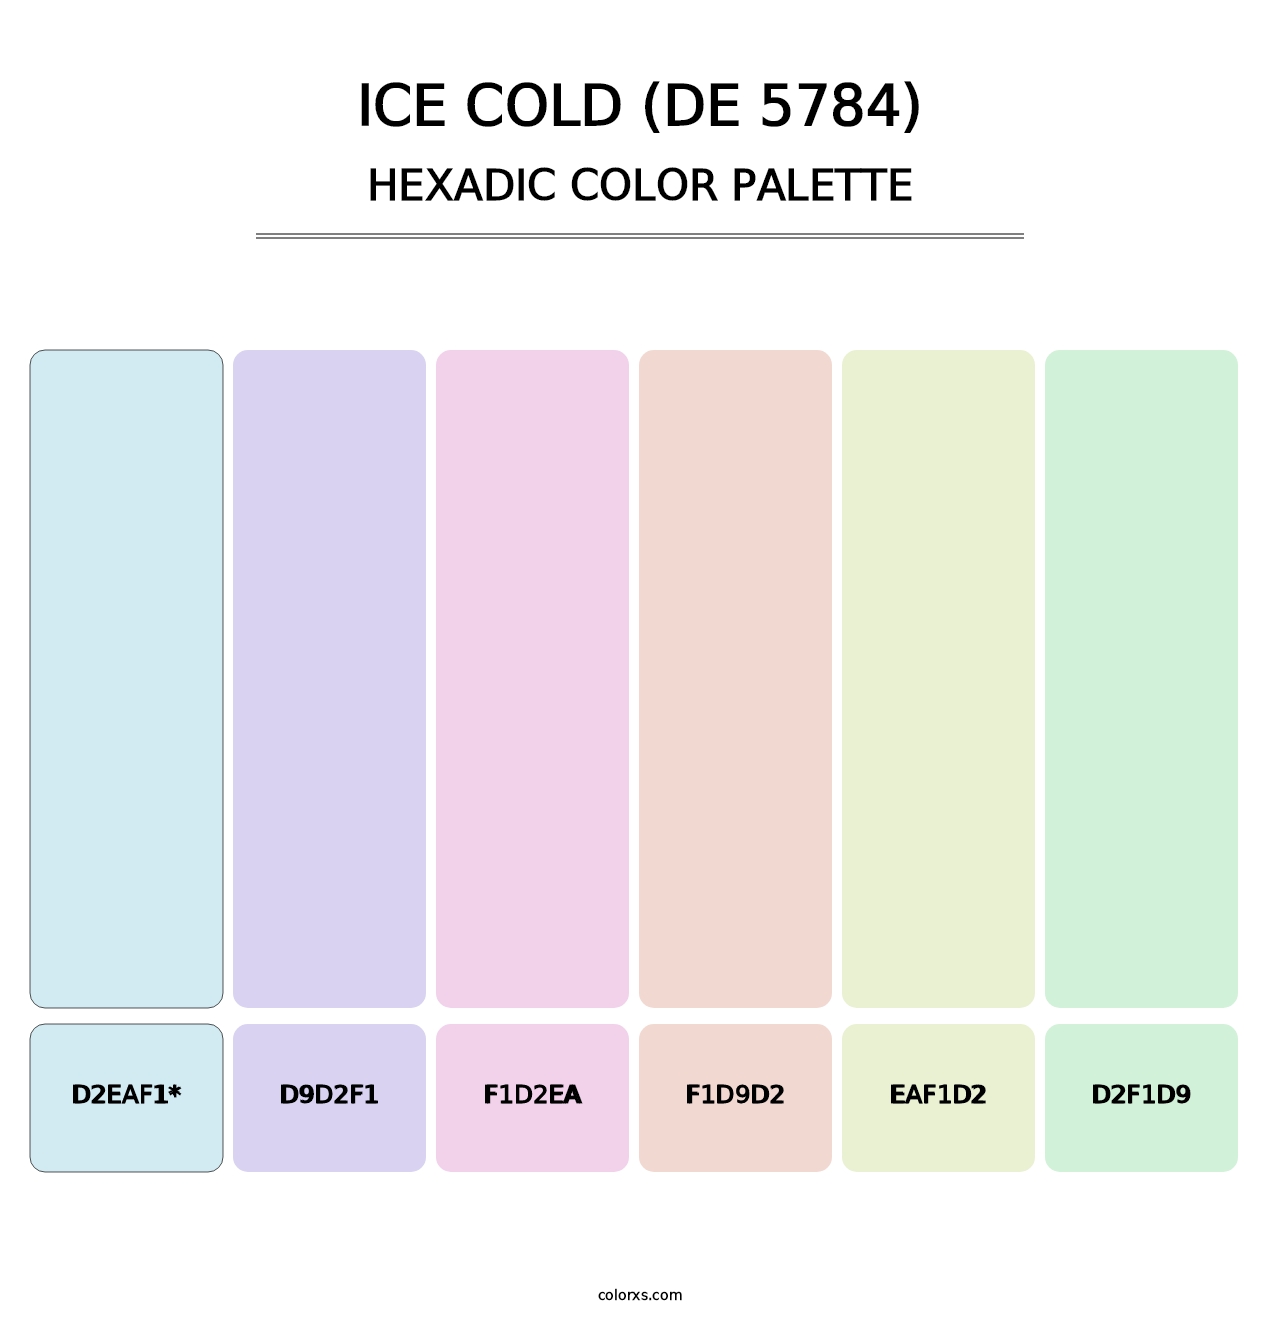 Ice Cold (DE 5784) - Hexadic Color Palette